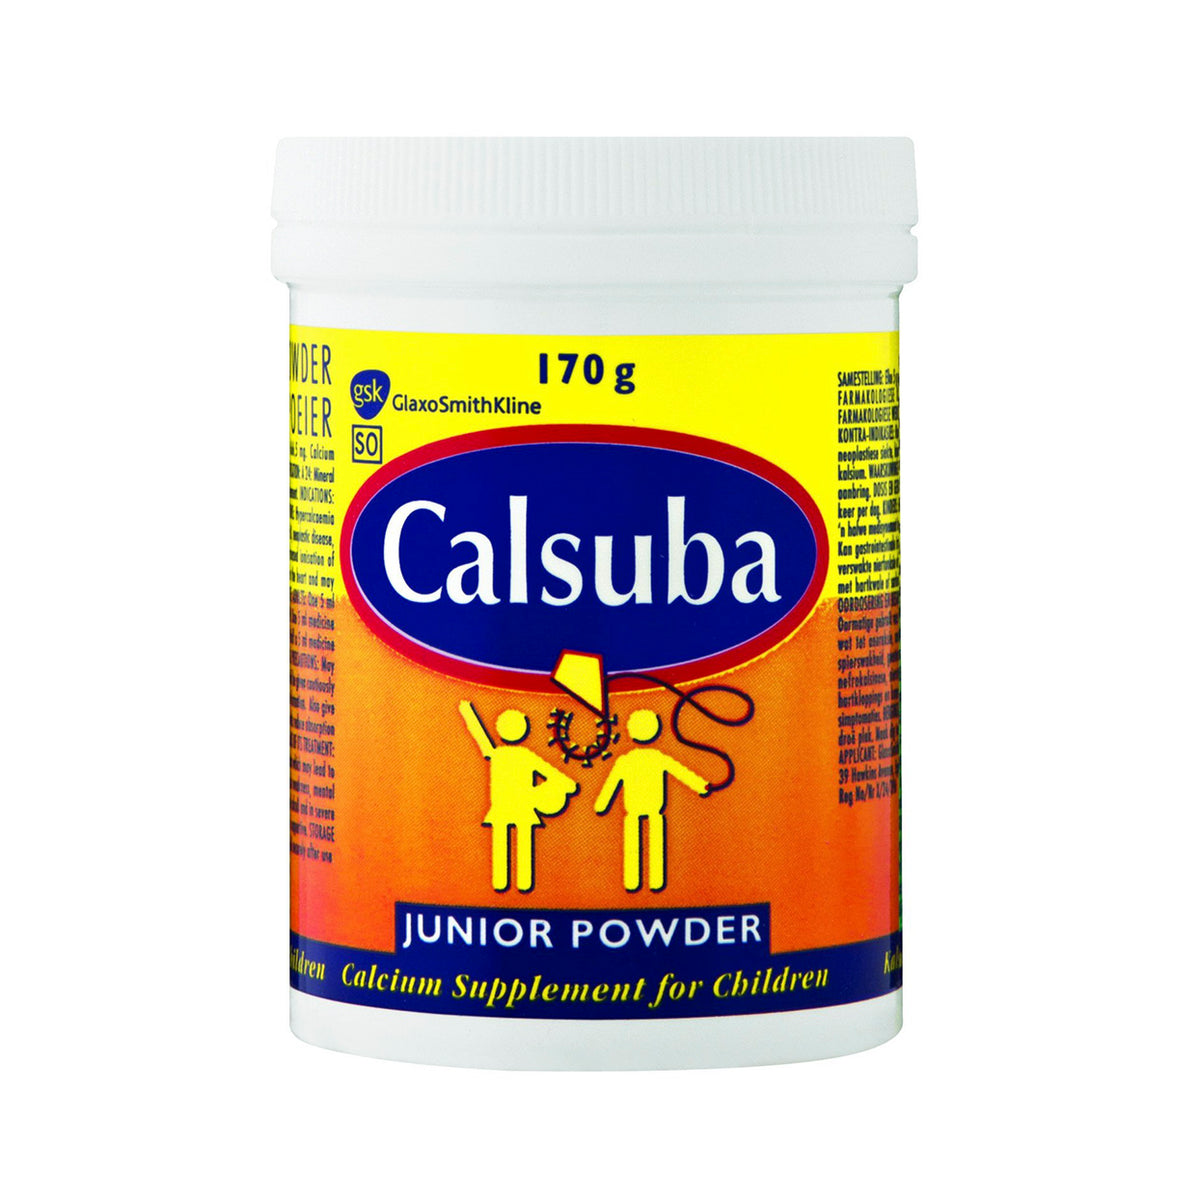 Calsuba Junior 170g Powder - Med365